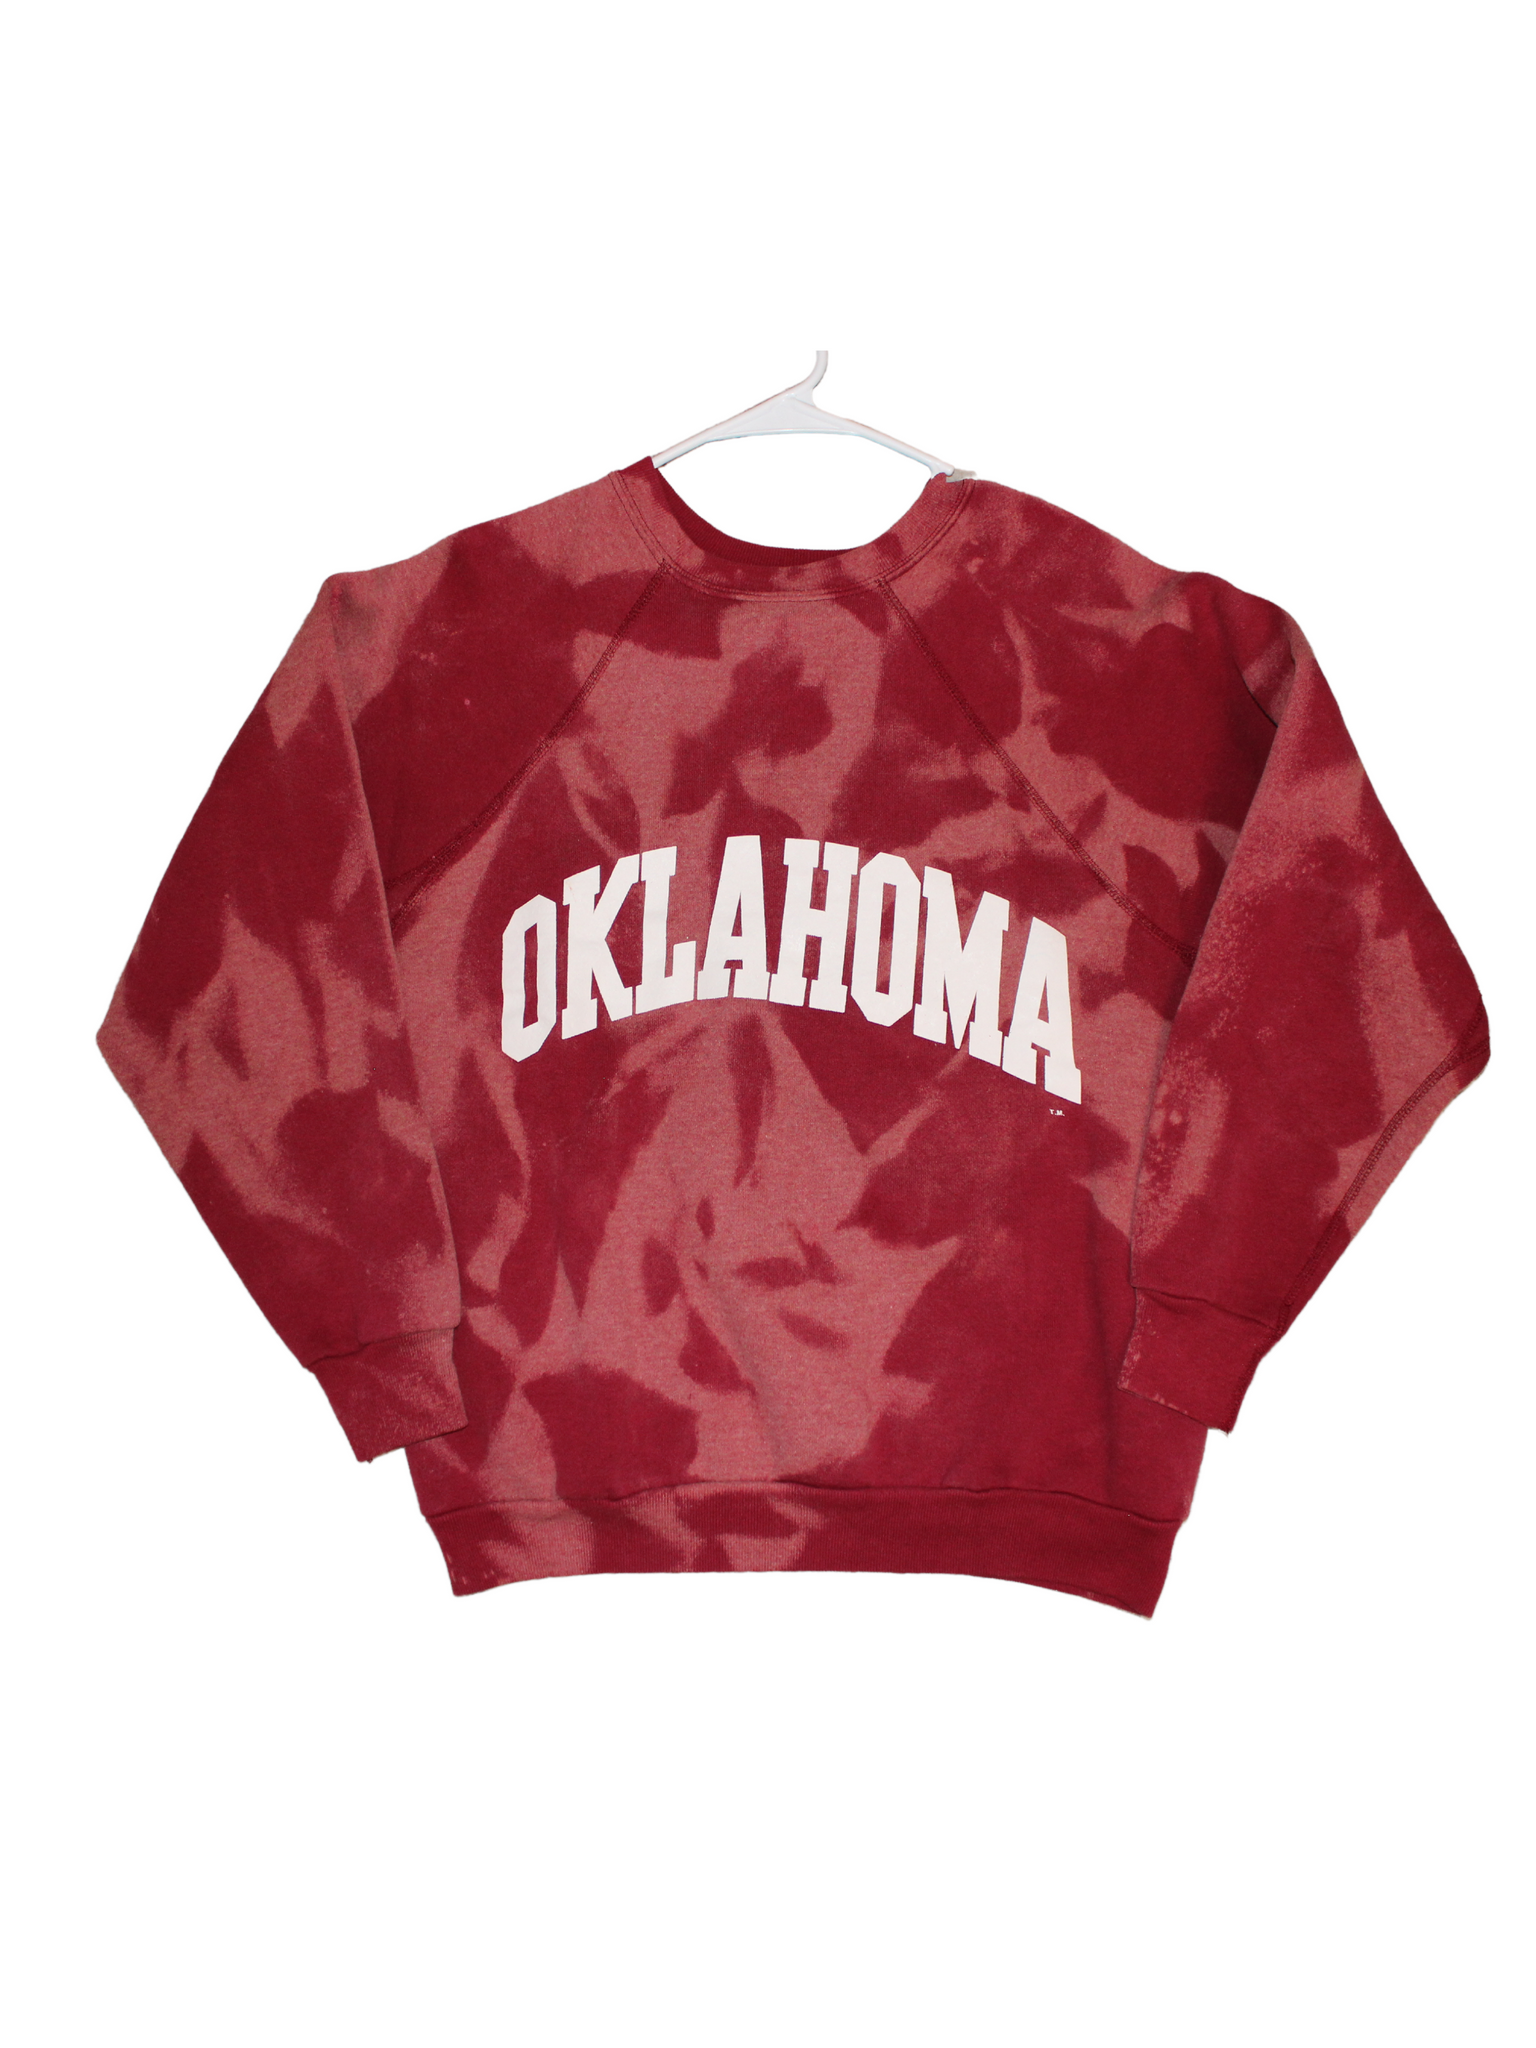 Vintage University of Oklahoma Bleached Sweatshirt